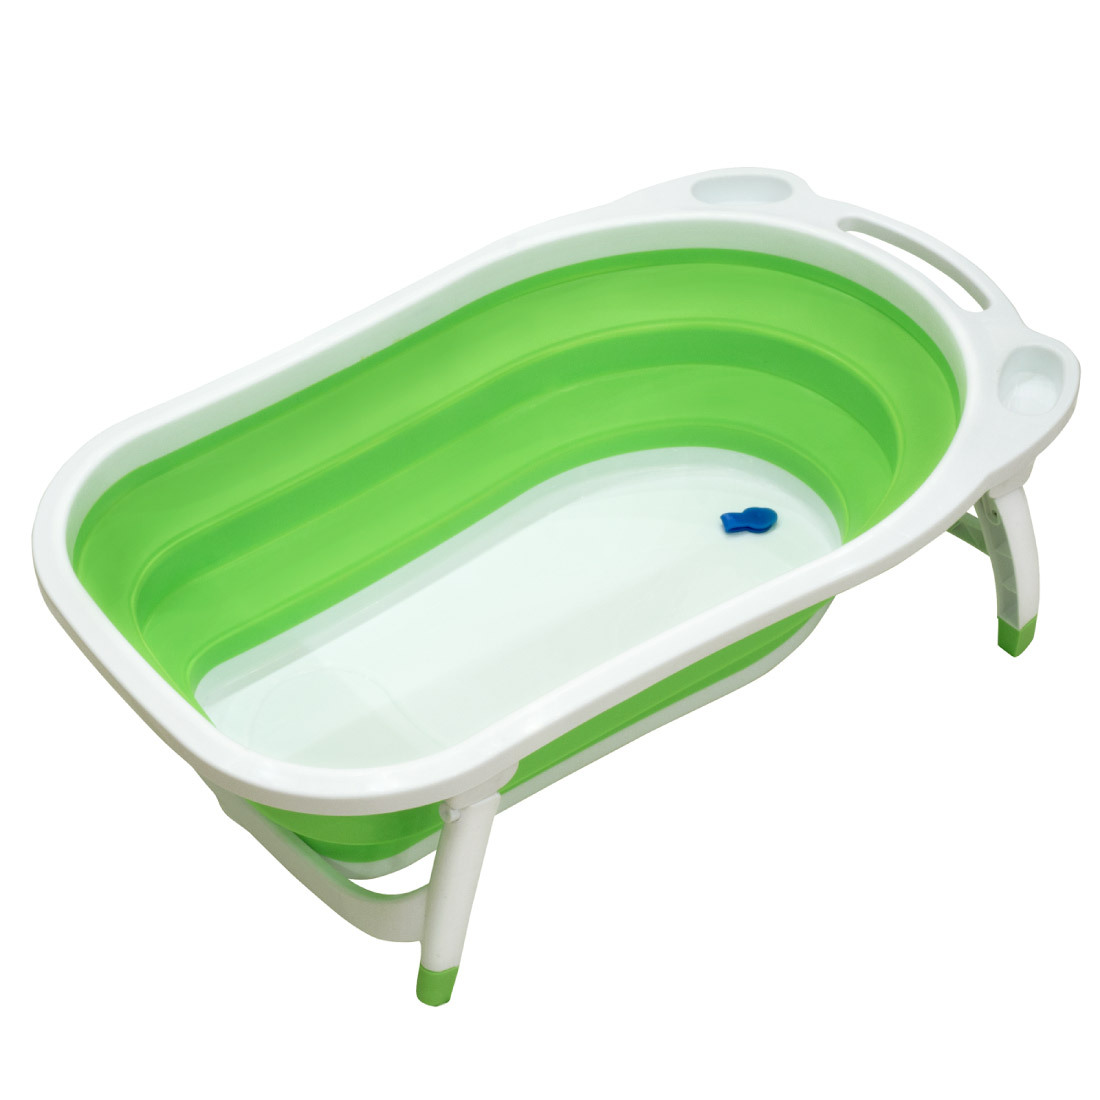 Купить складную ванну для купания. Ванночка FUNKIDS Folding Smart Bath. FUNKIDS Folding Smart Bath cc6601. Fаnкids Fоlding Smаrt ватh ваночка. Складная ванночка для новорожденных.